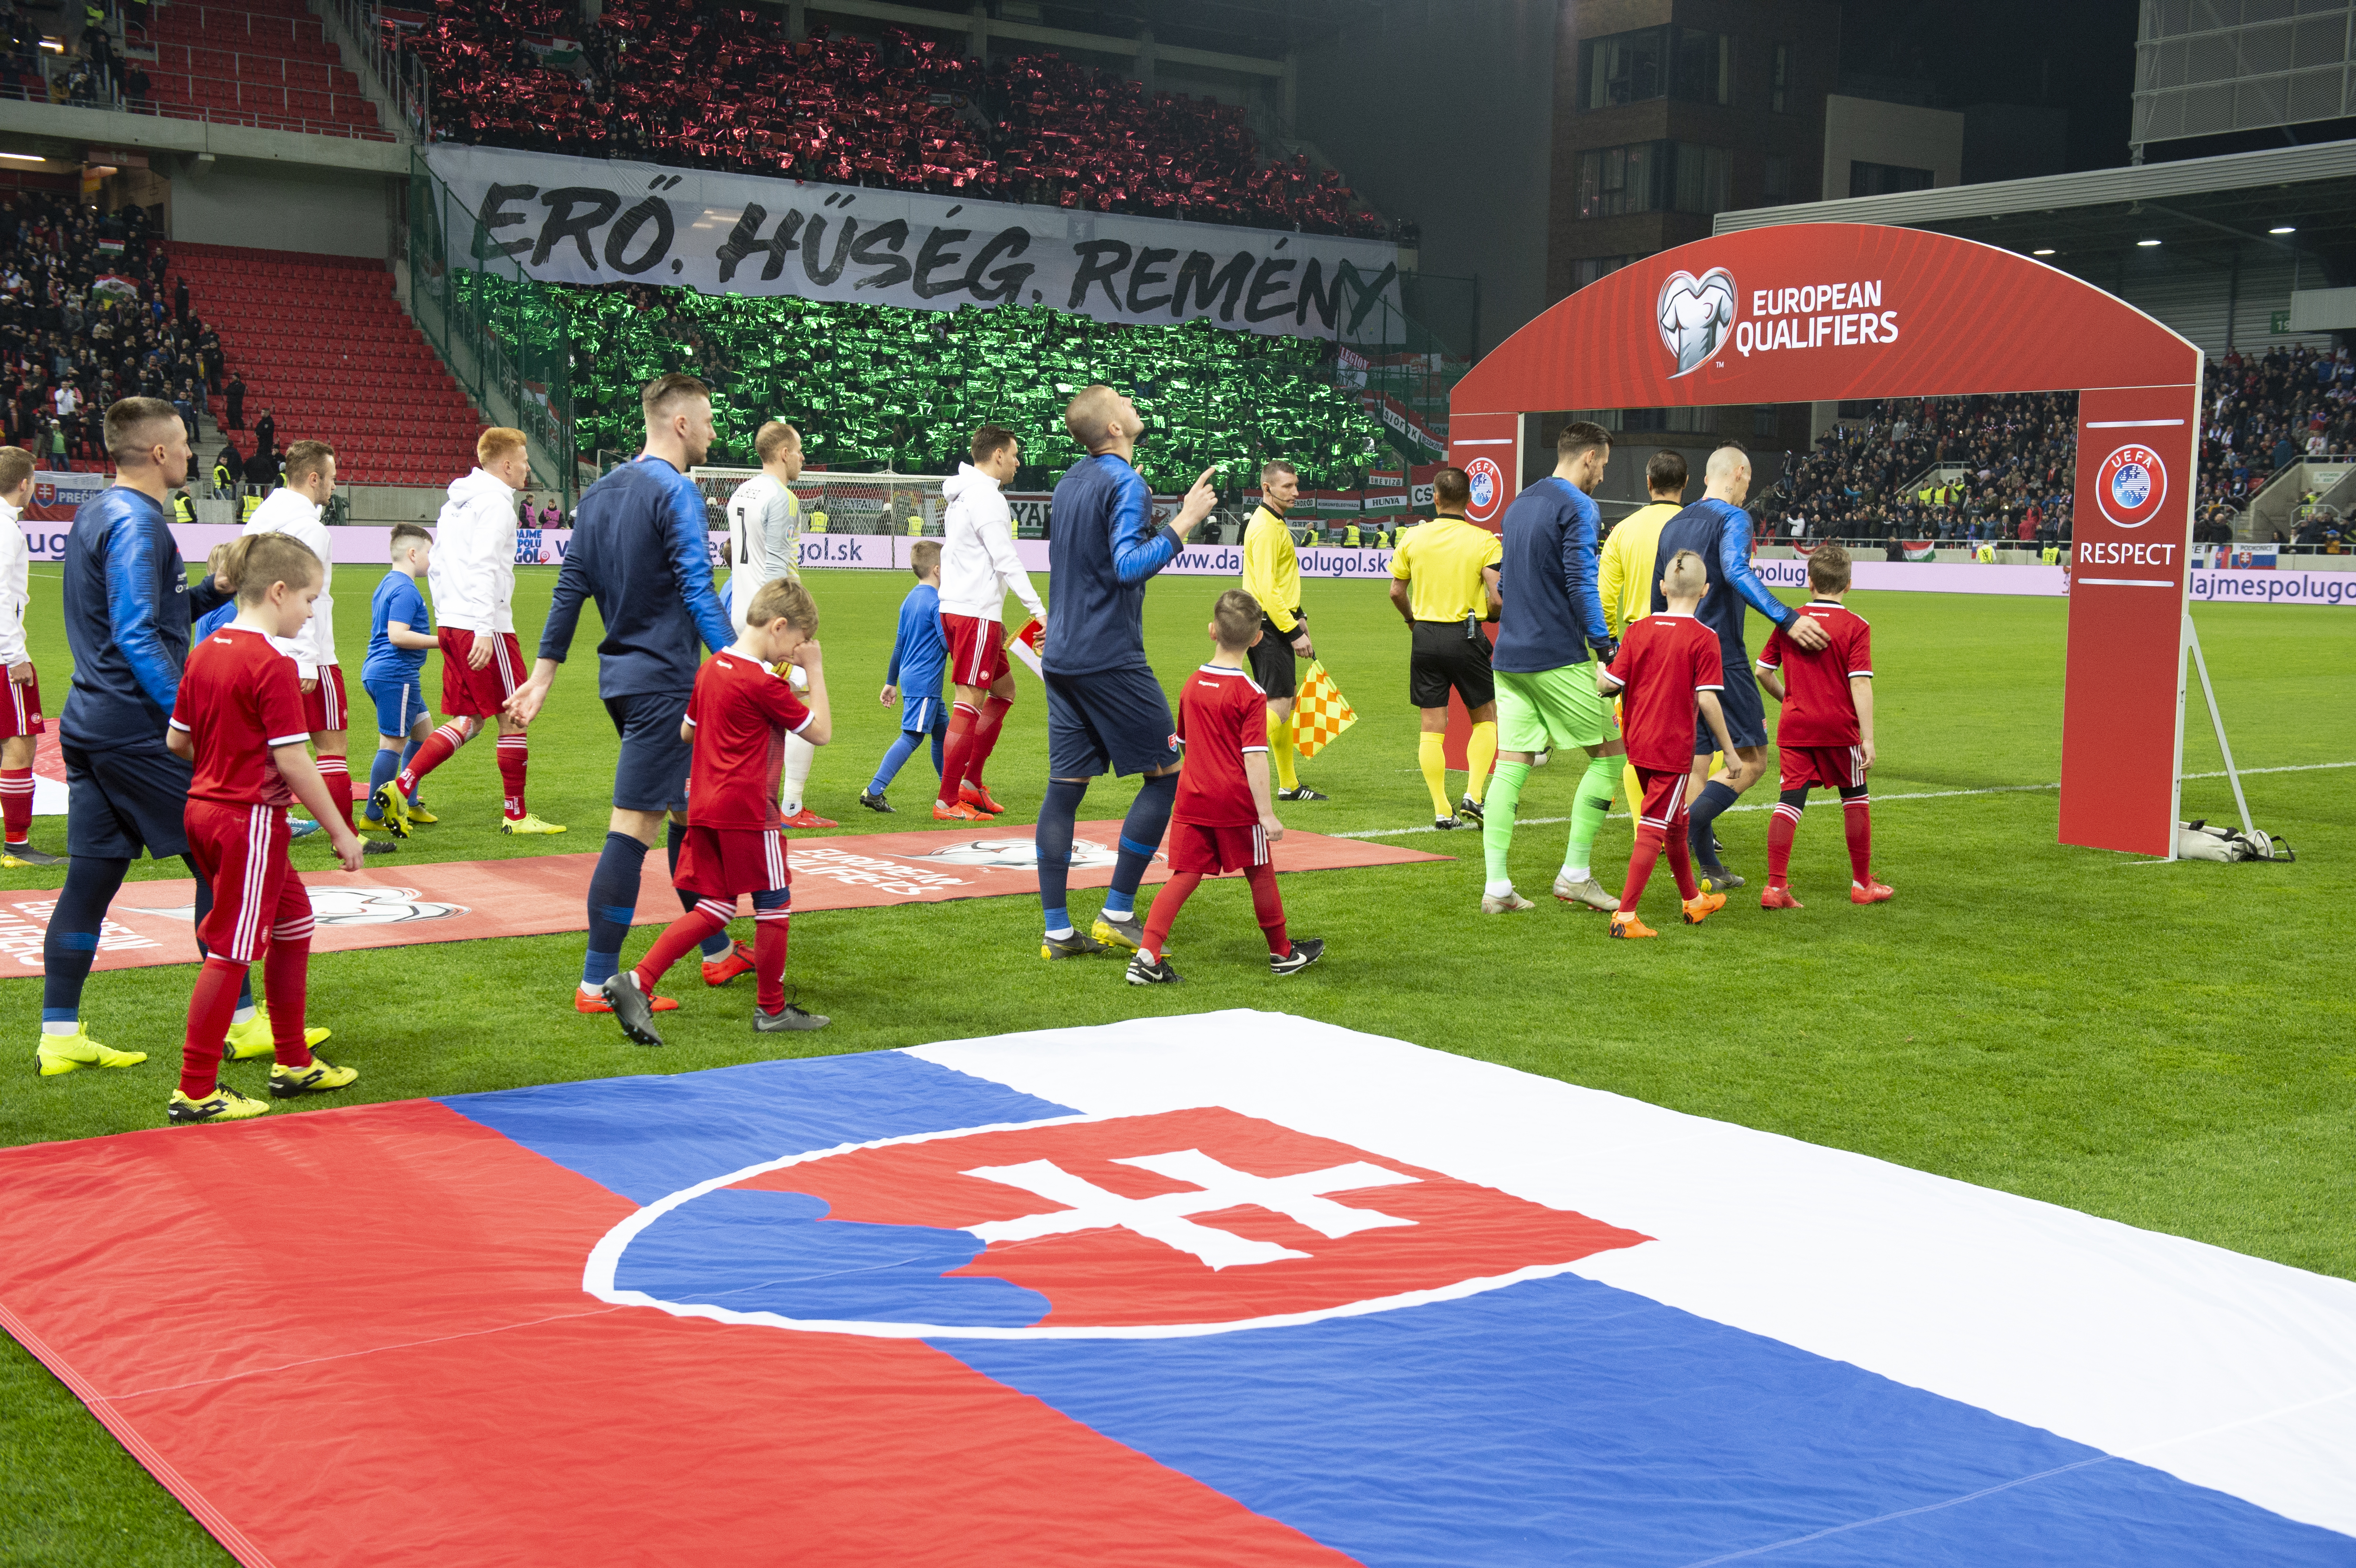 Na snímke príchod reprezentačného družstva Maďarska  a Slovenska  na trávnik pred úvodným stretnutím prvého kola E-skupiny kvalifikácie EURO 2020 Slovensko  - Maďarsko  21. marca 2019 v Trnave.